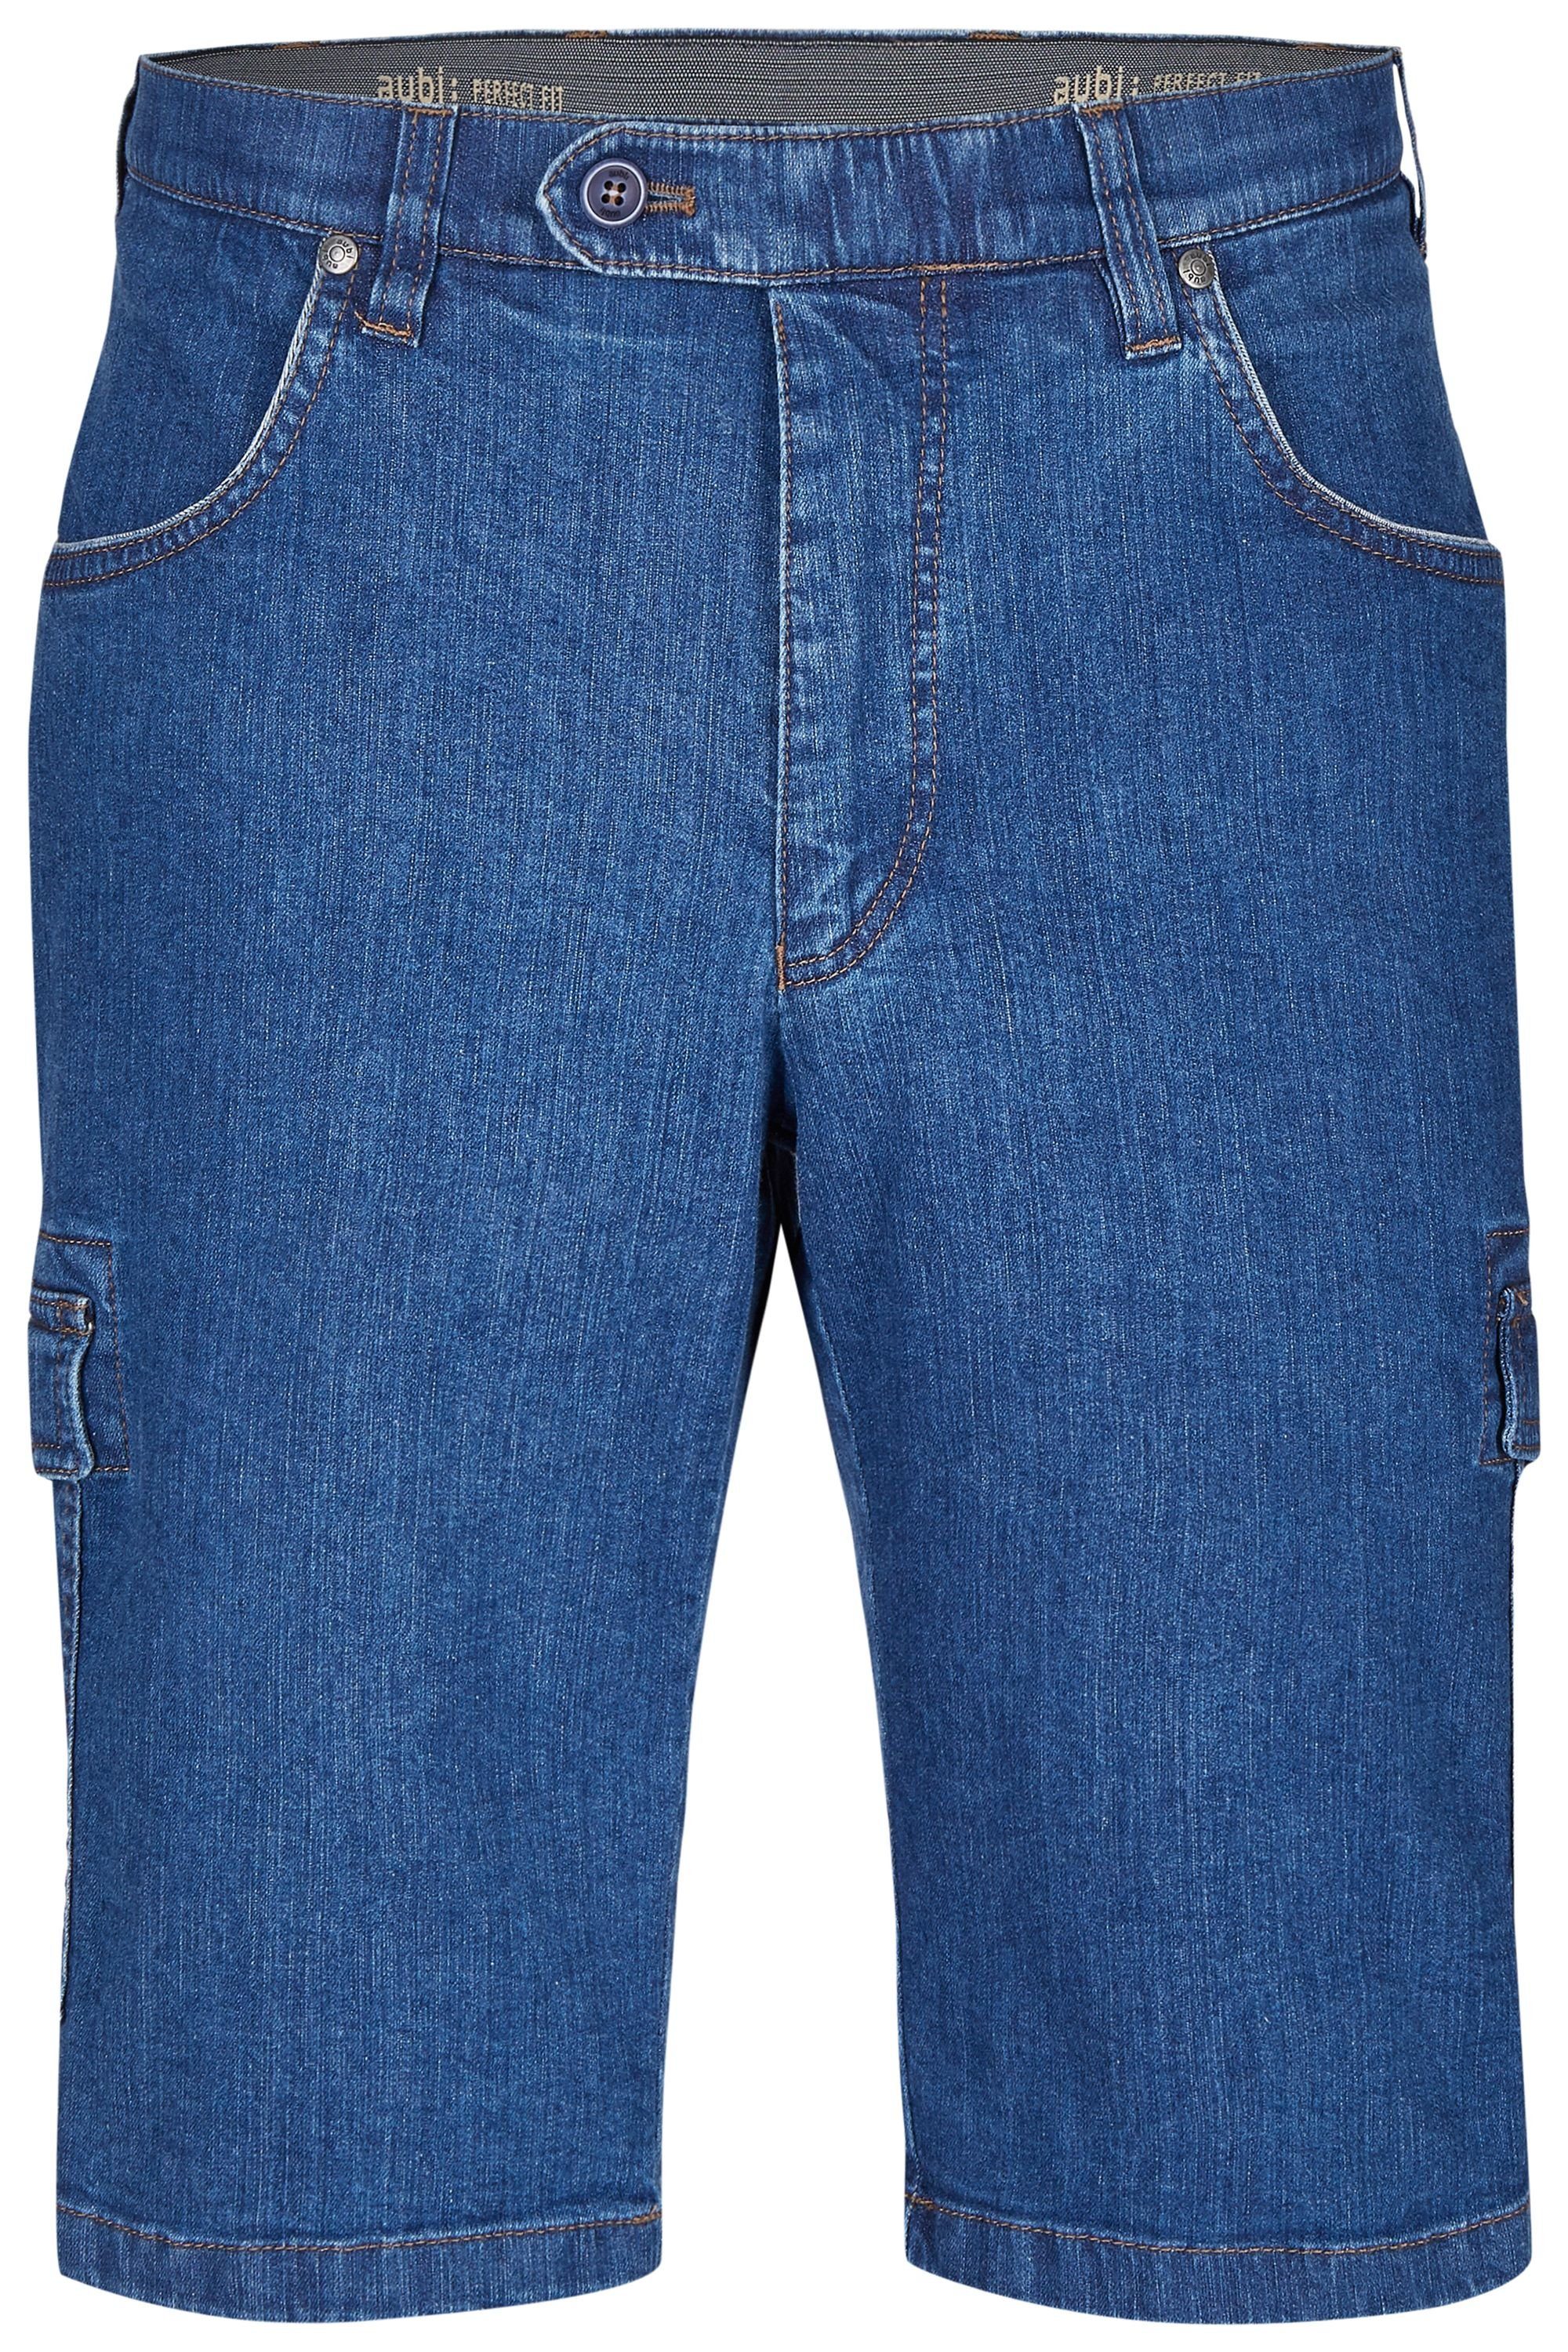 aubi: Bequeme Jeans aubi Perfect Fit Herren Sommer Jeans Cargo Shorts Stretch aus Baumwolle High Flex Modell 616 stone (46)